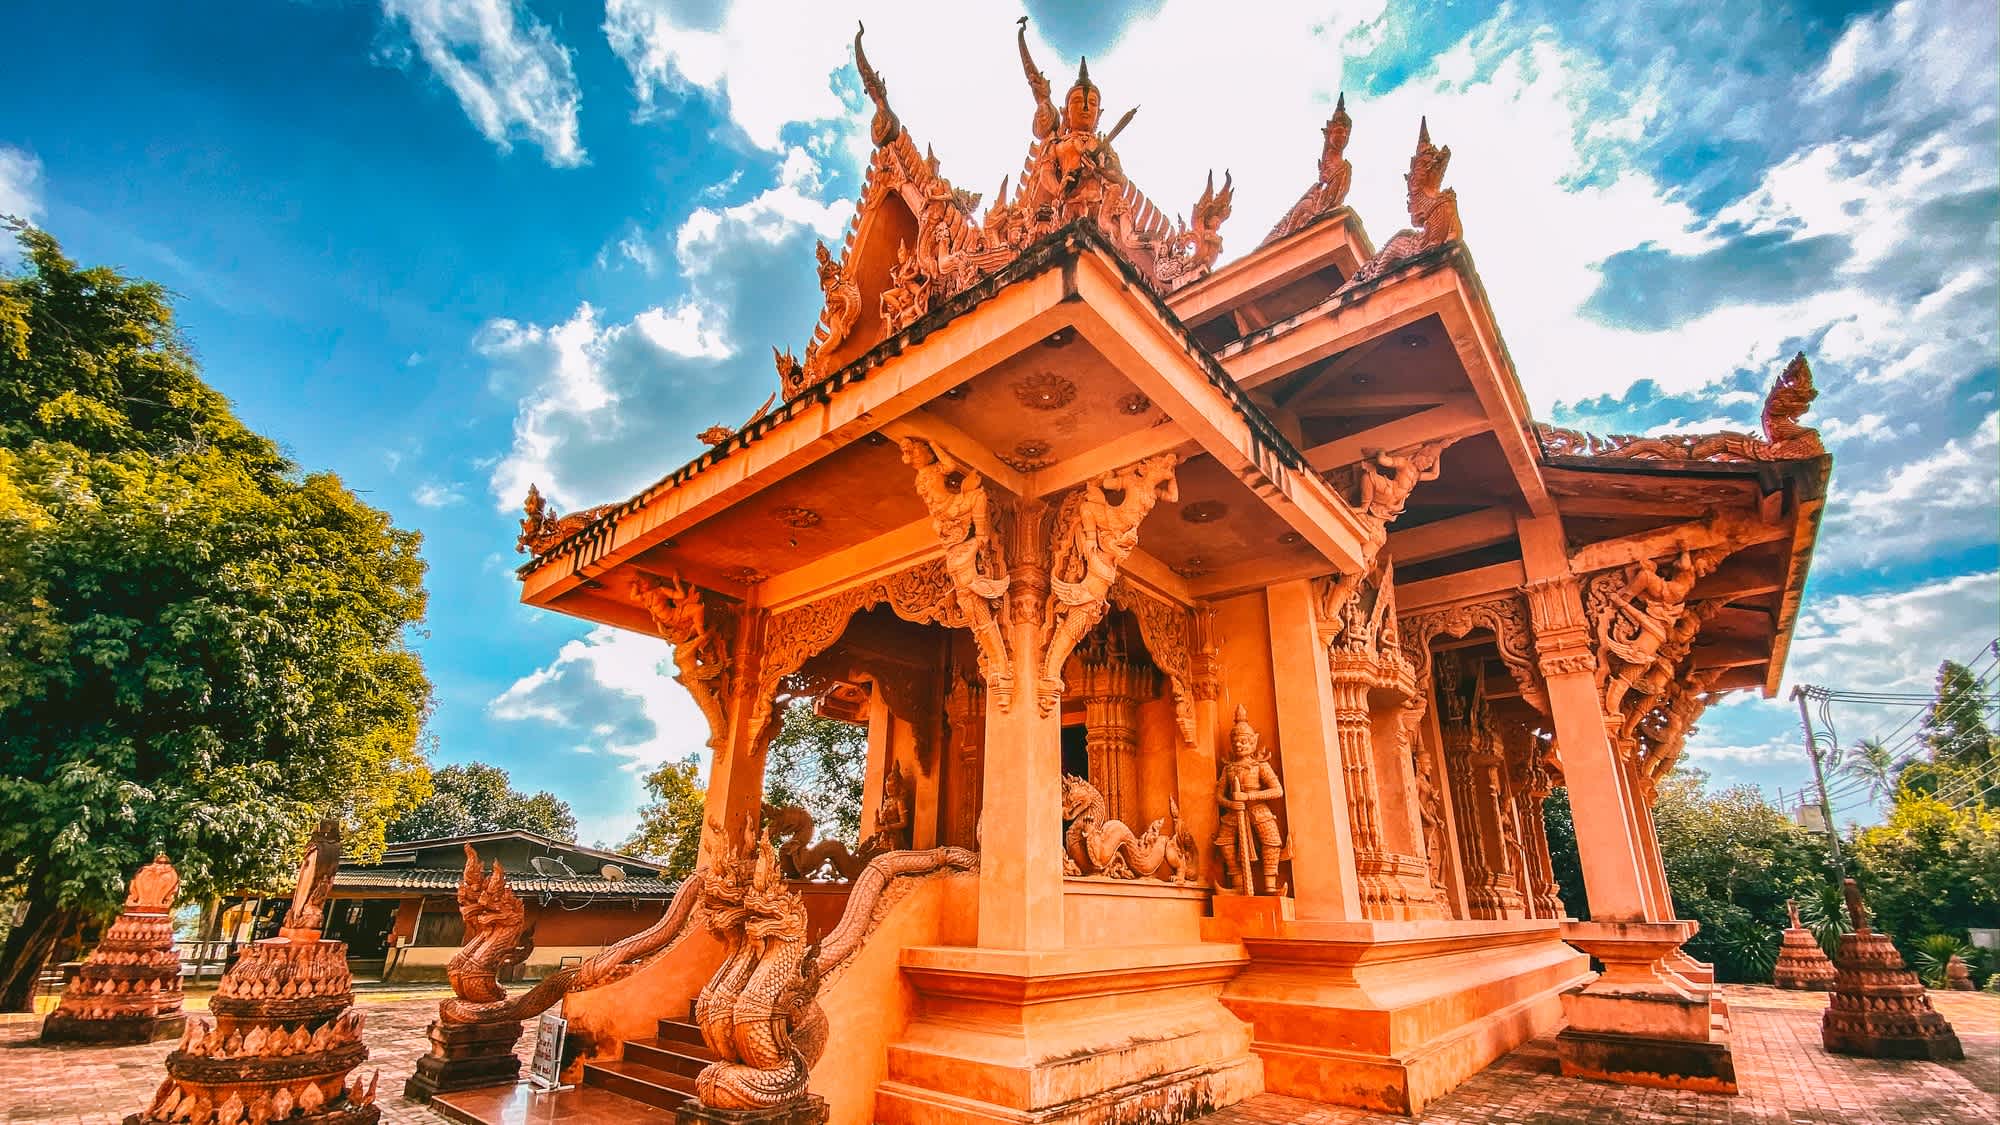 Temple rouge de Wat Ratchathammaram à Koh Samui, Thaïlande

